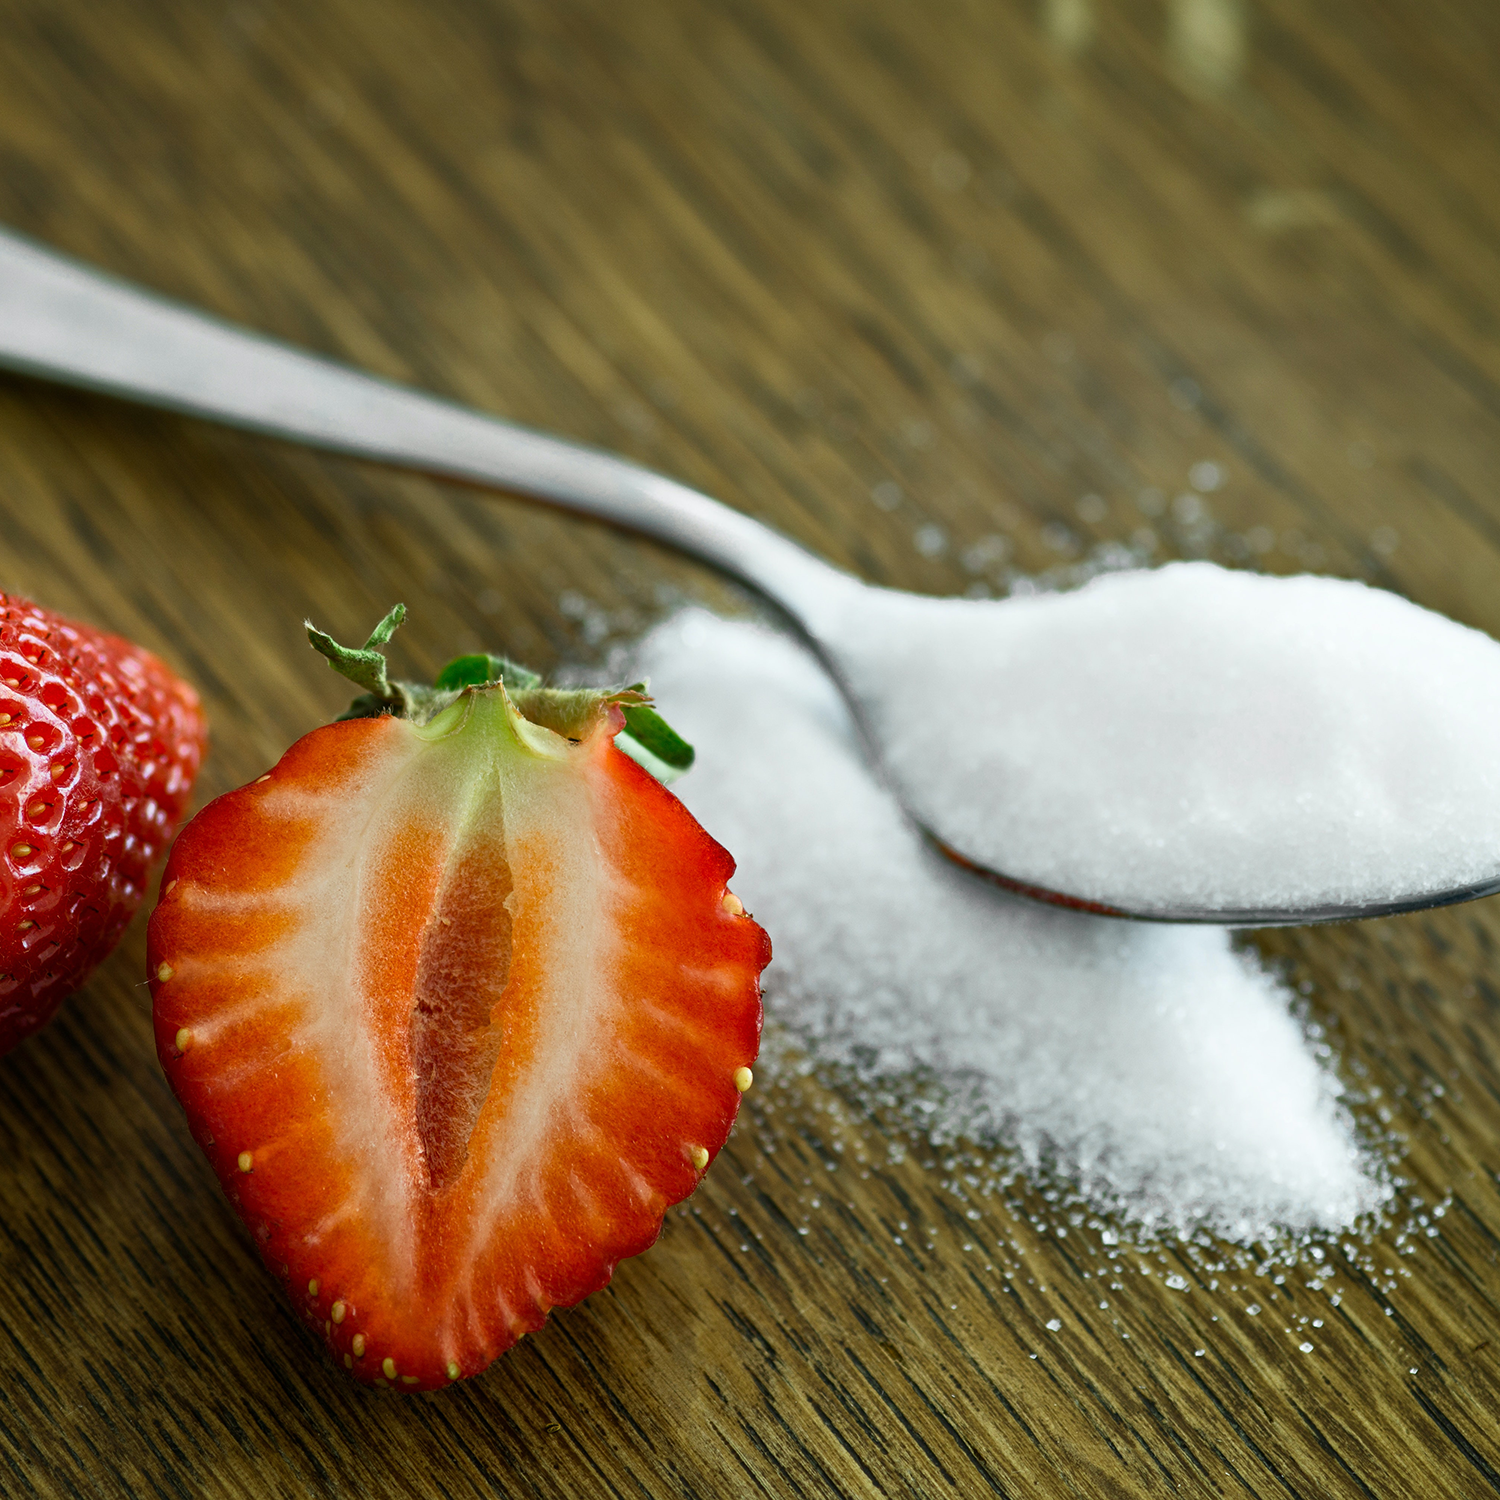 Süßen Sie Ihren Tag auf natürliche Weise: 6 raffinierte Zuckeralternativen, die Sie lieben werden